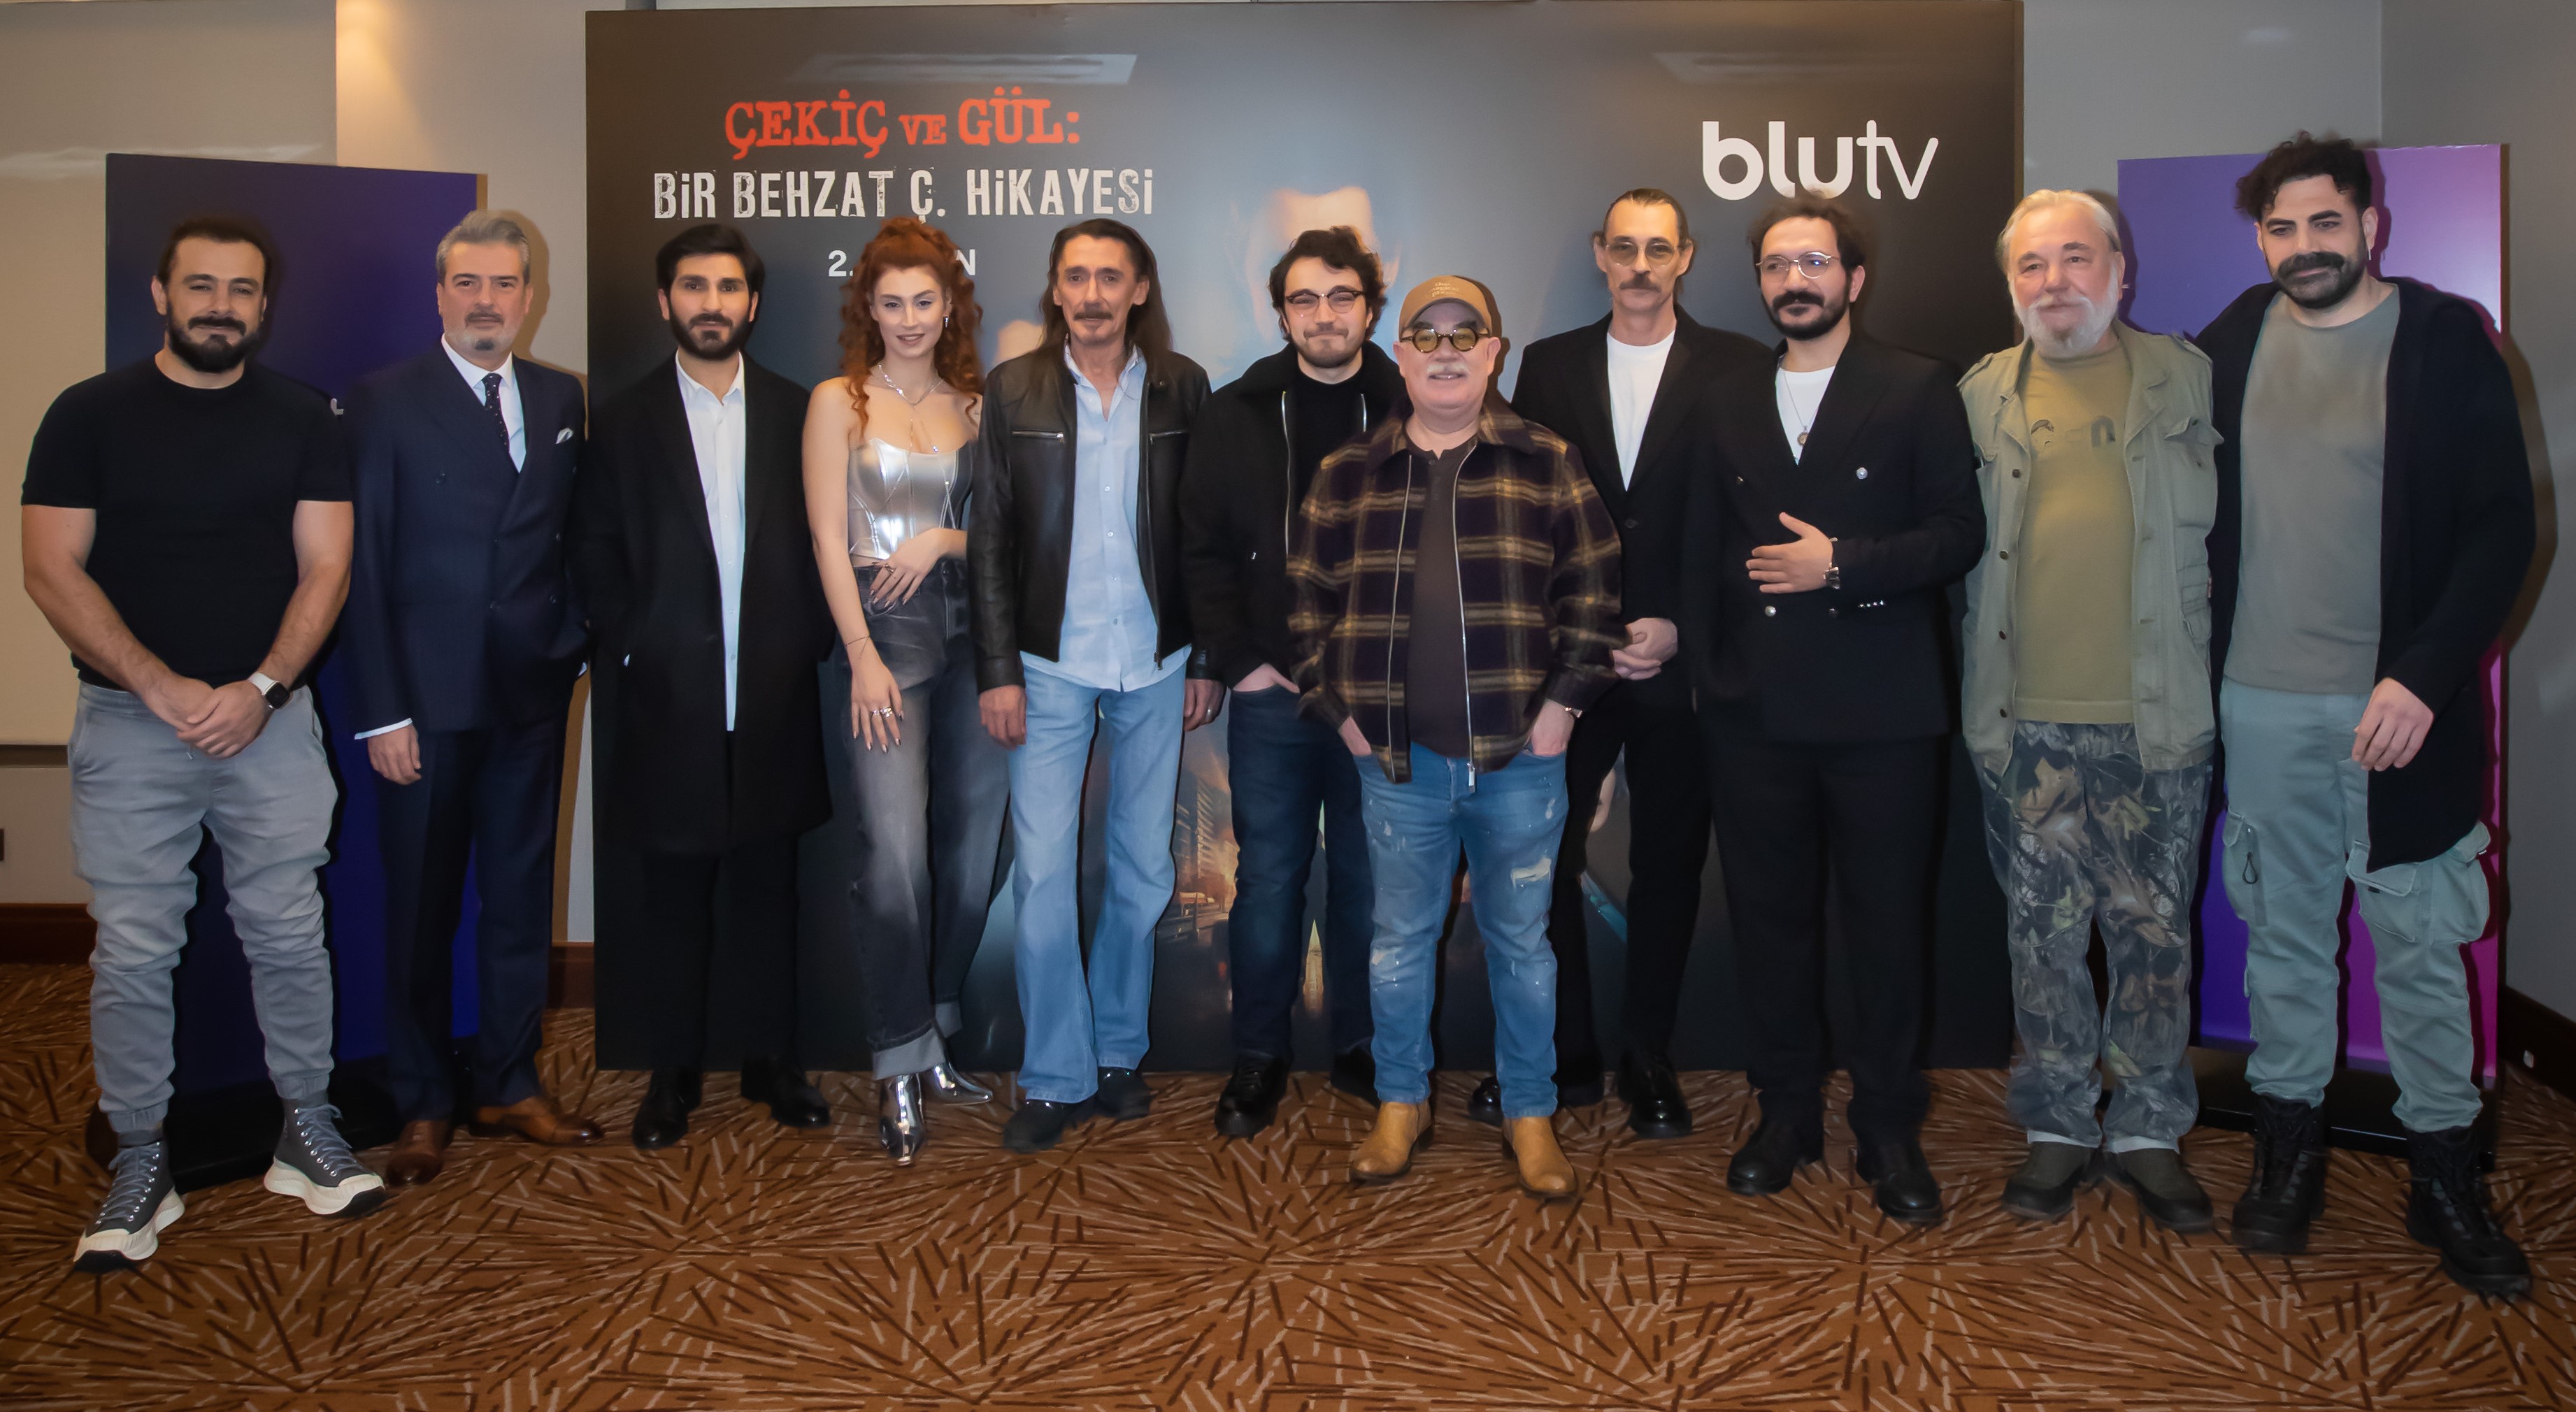 BluTV’nin merakla beklenen dizisi Çekiç ve Gül:Bir Behzat Ç. Hikayesi, 2. sezonunu kutlama